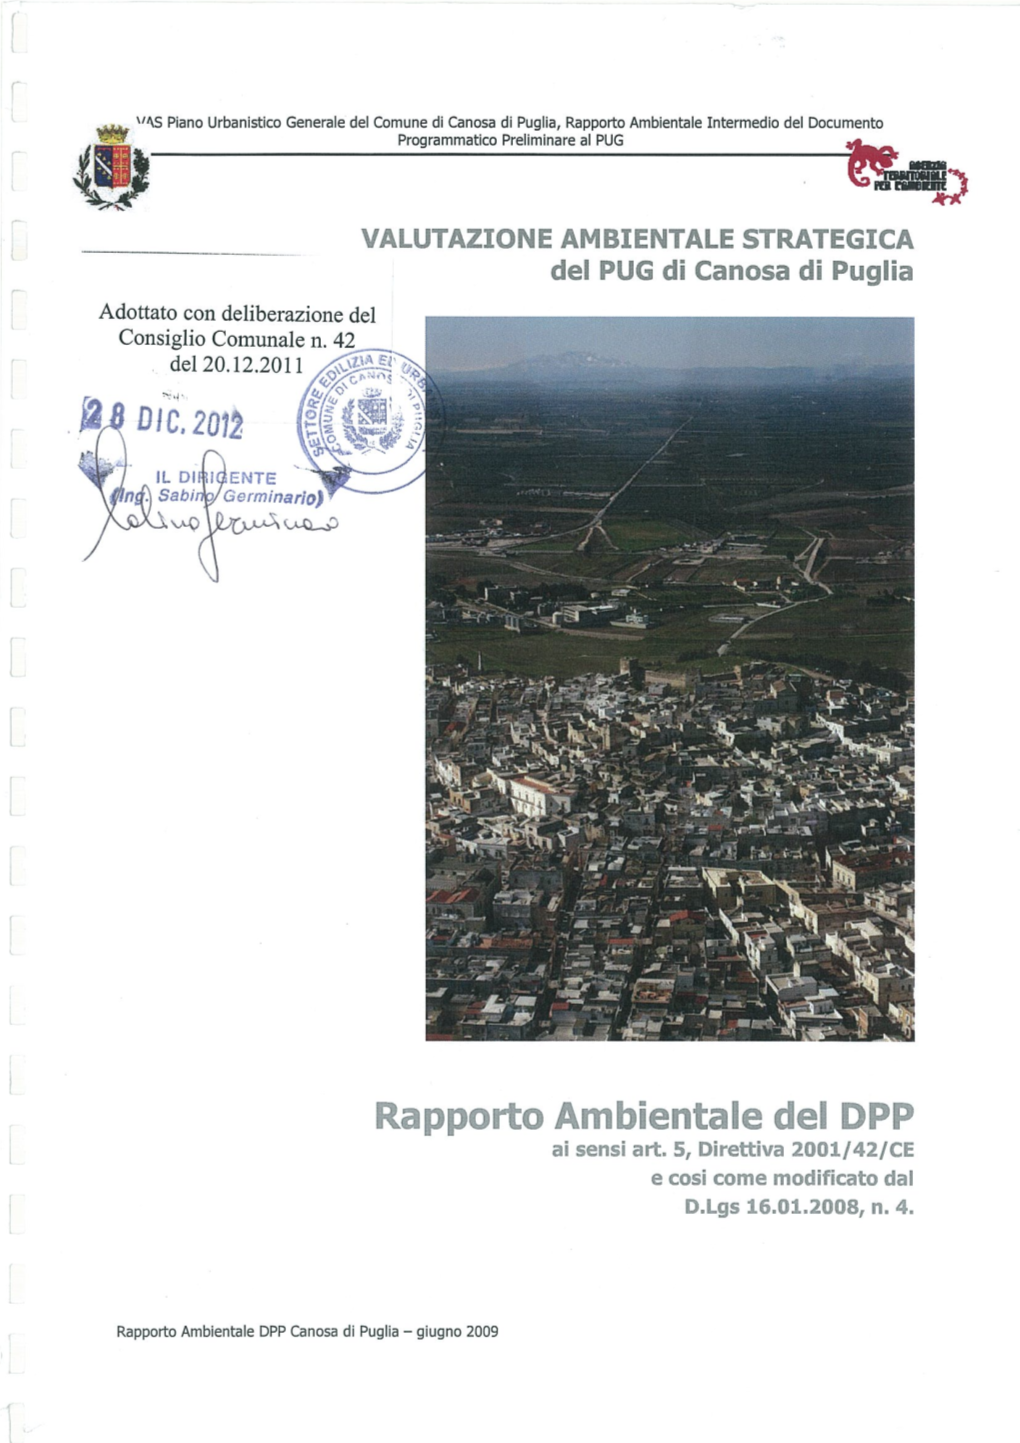 VAS Piano Urbanistico Generale Del Comune Di Canosa Di Puglia, Rapporto Ambientale Intermedio Del Documento Programmatico Preliminare Al PUG